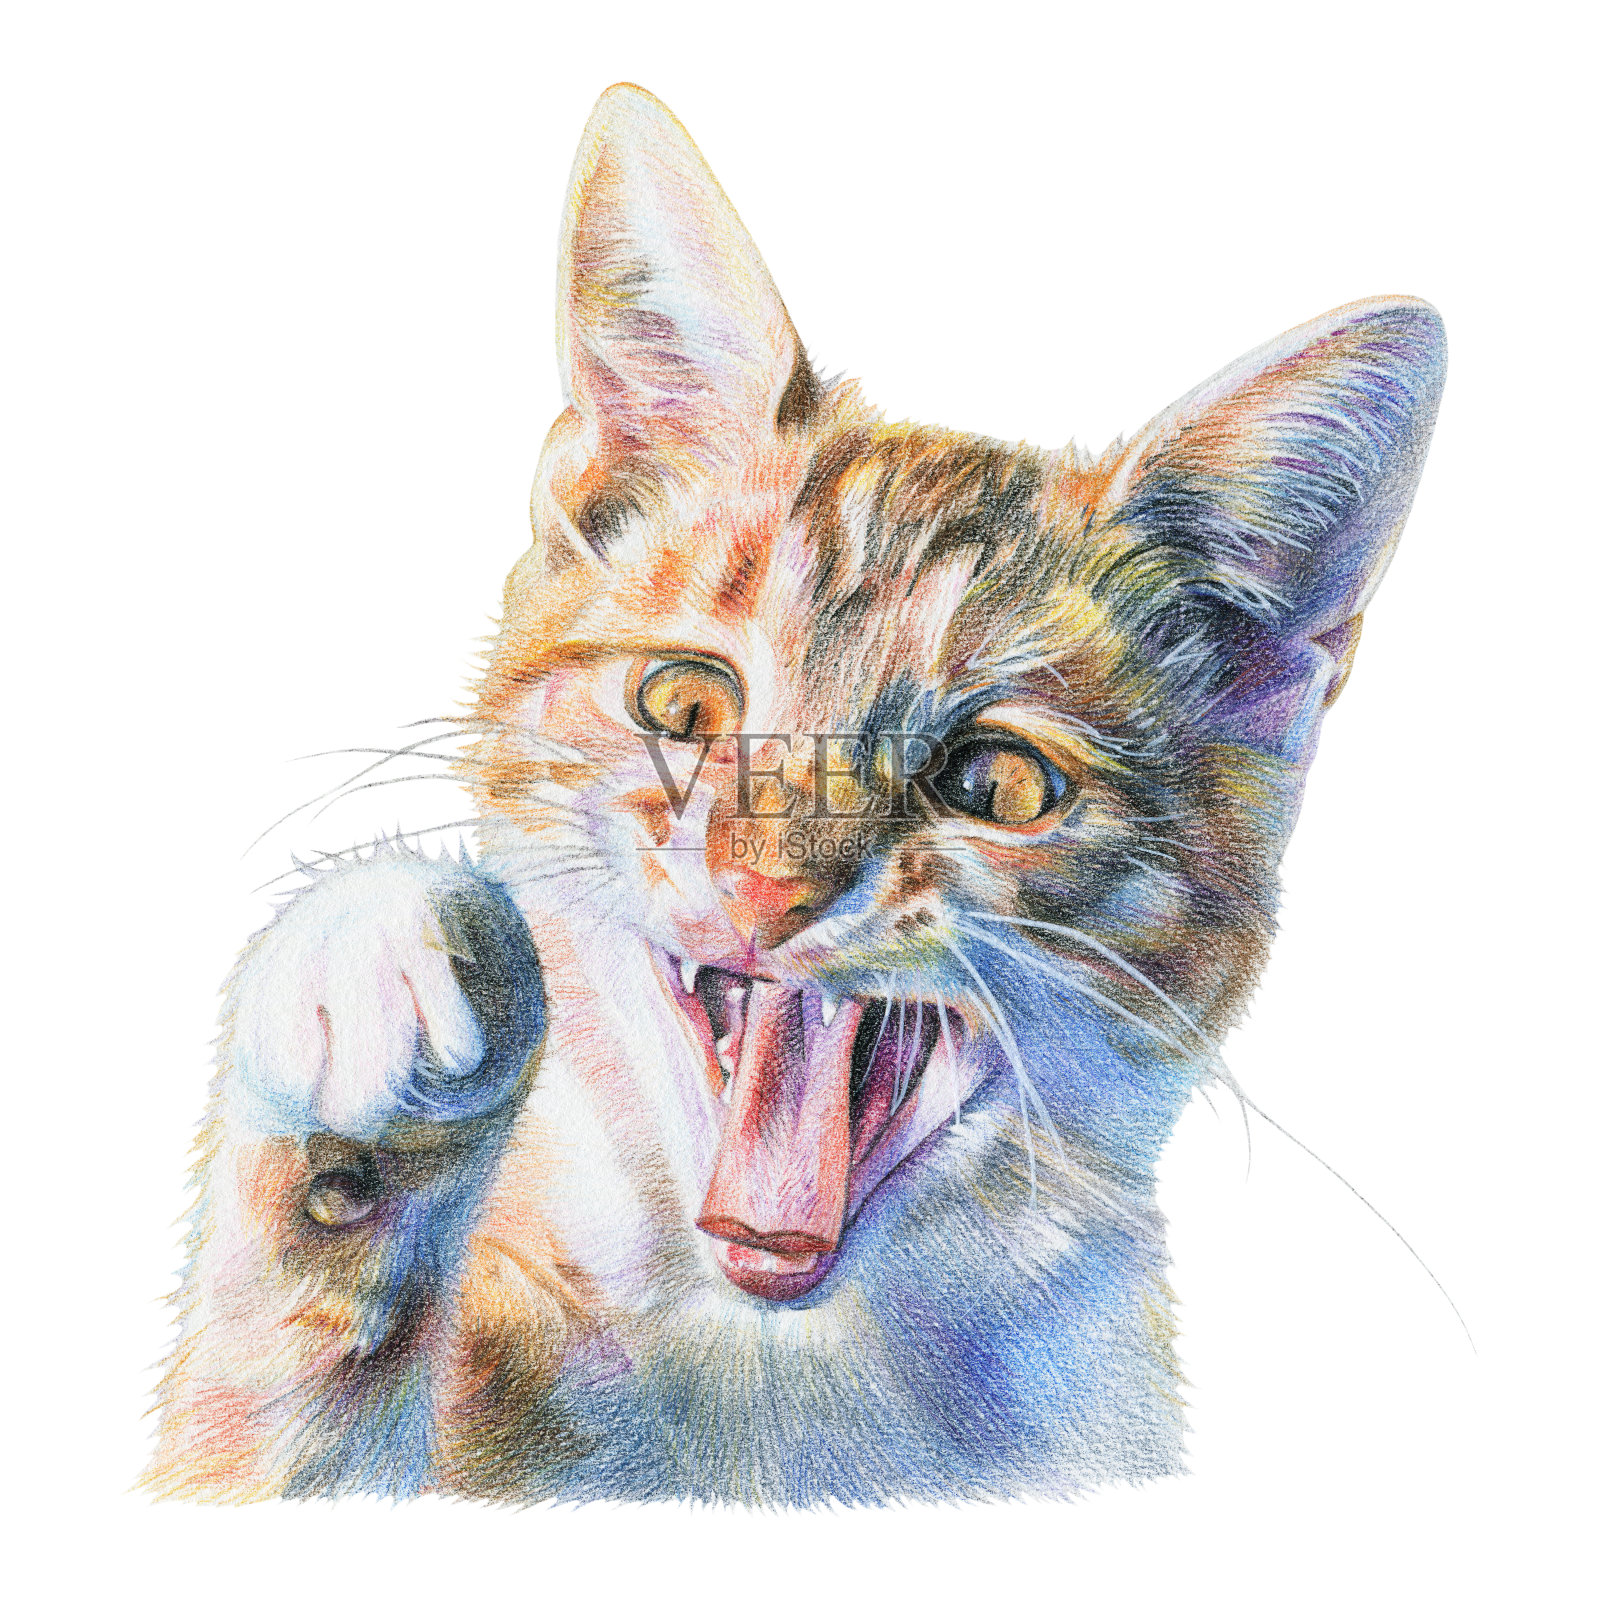 用彩色铅笔画的红猫插画图片素材